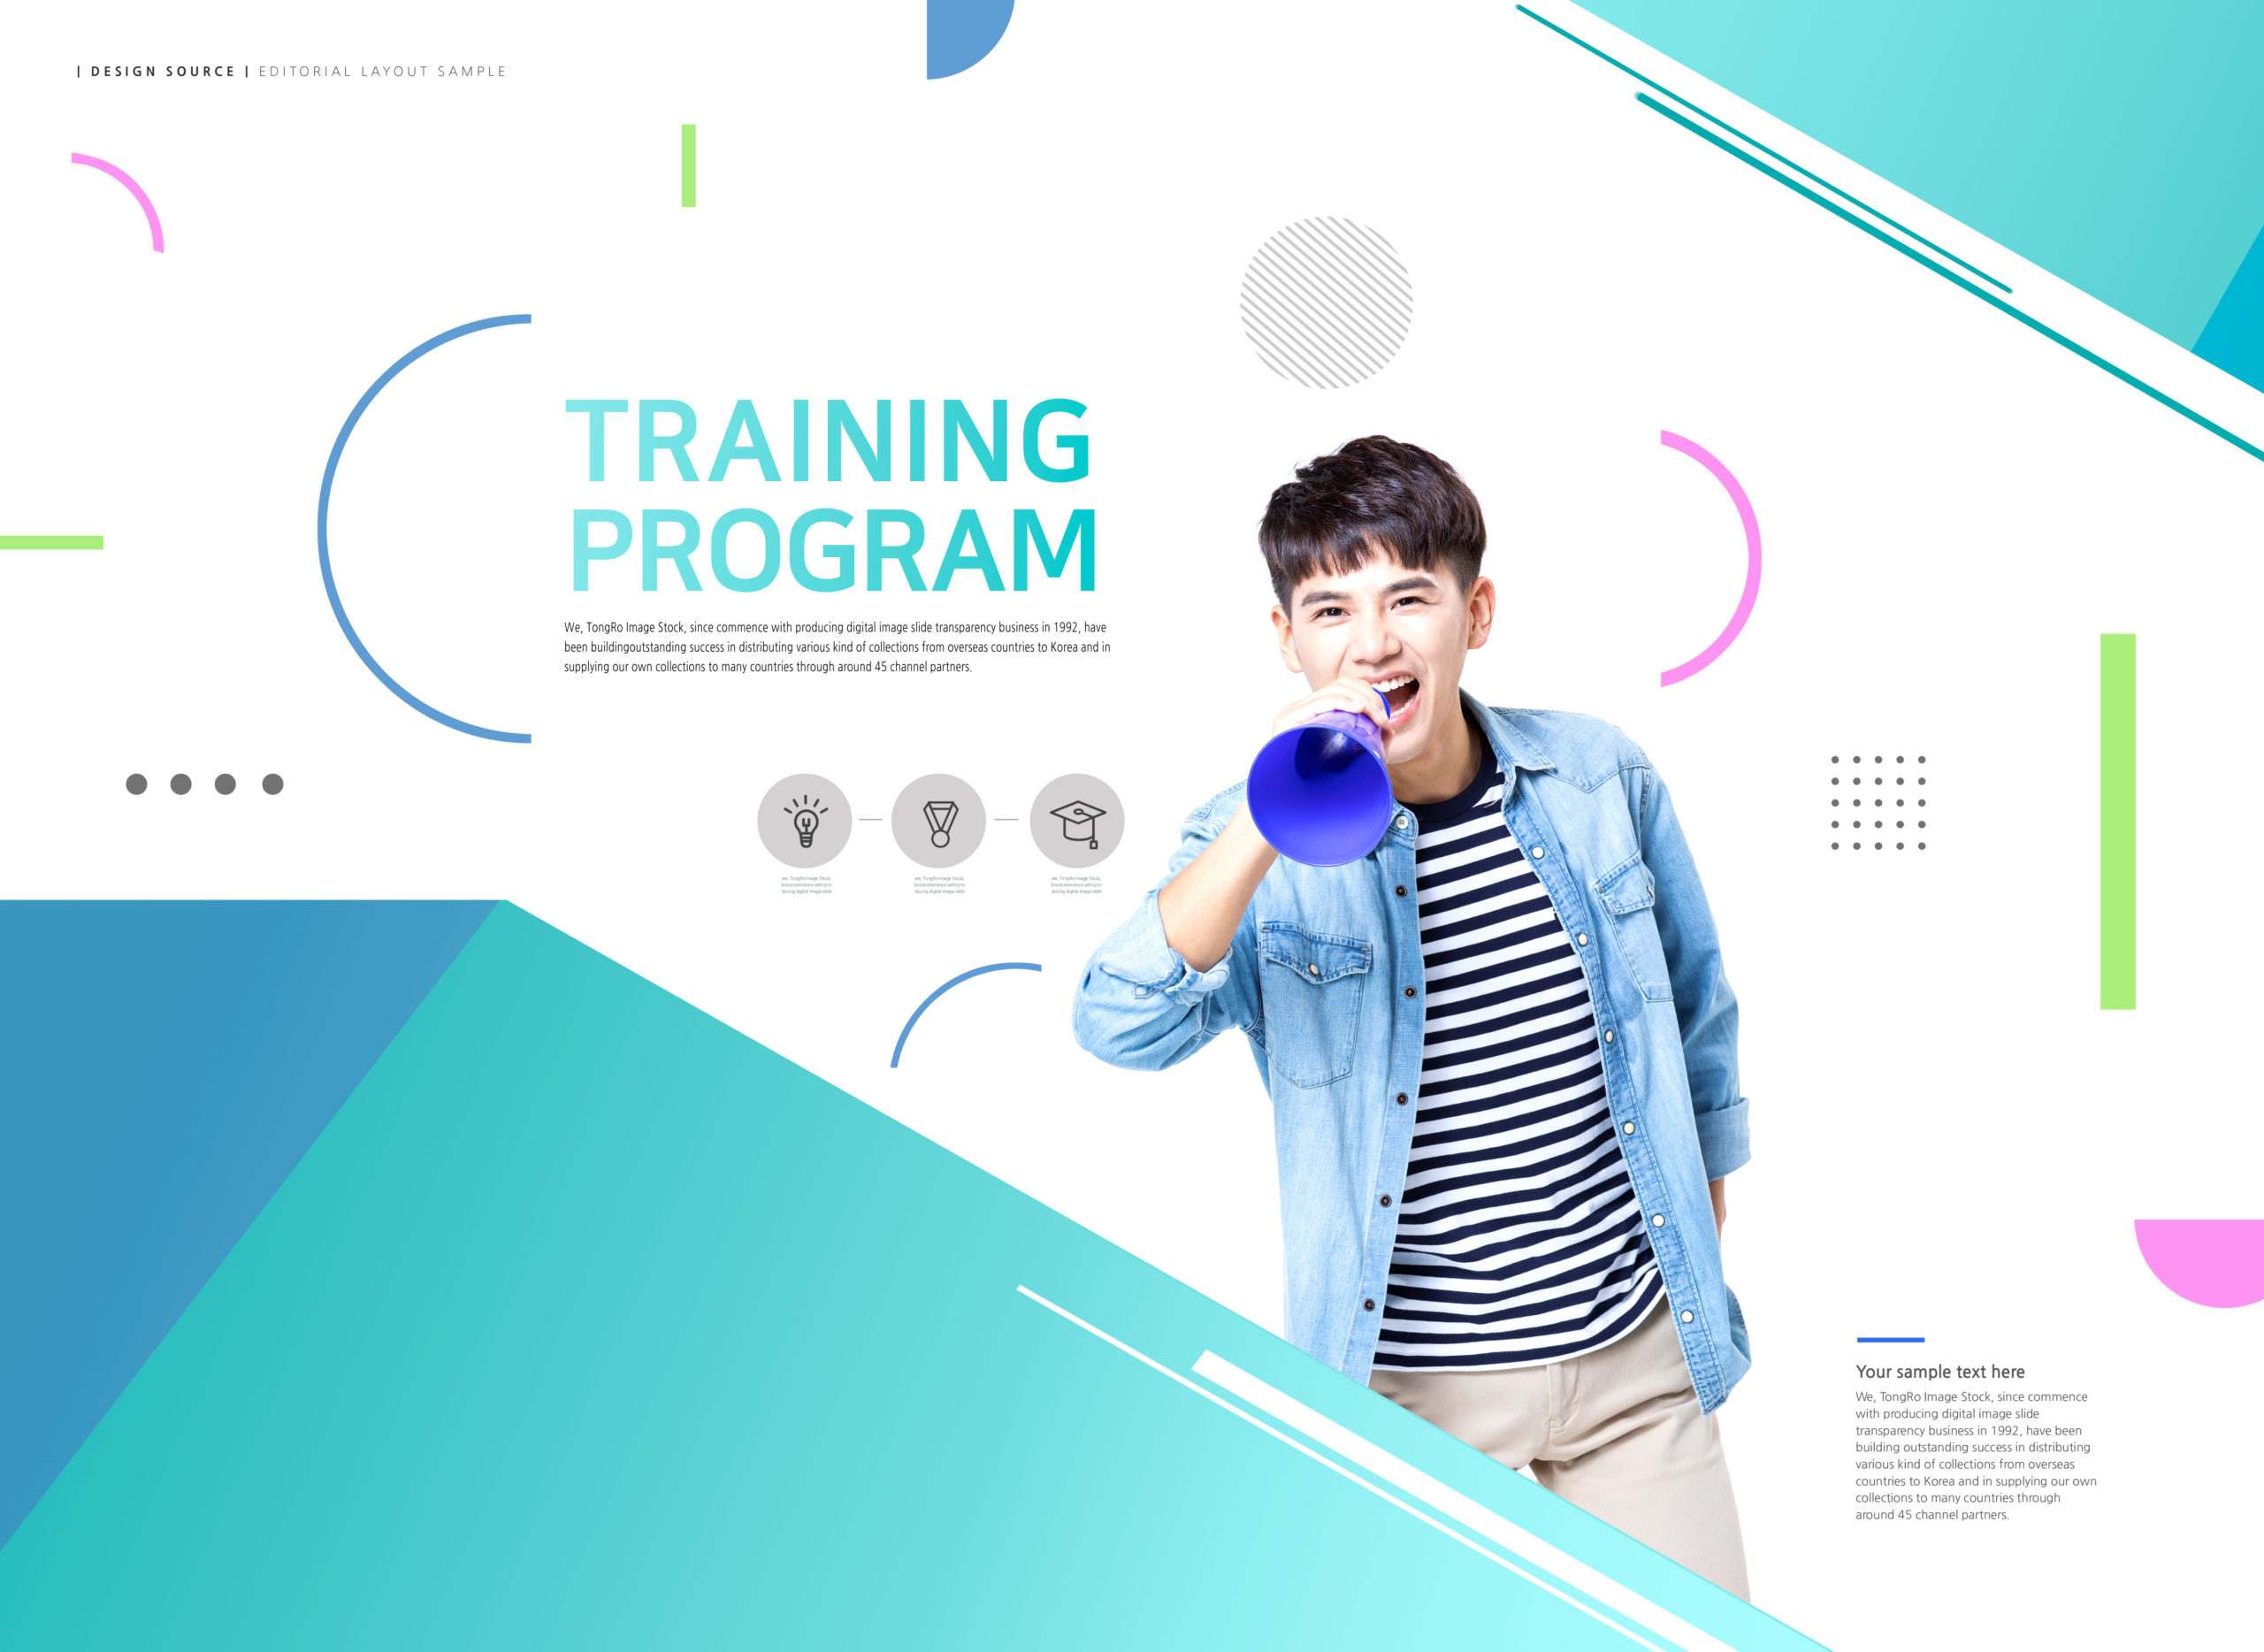 学习培训计划教育网站主页设计模板套装[PSD]插图(5)